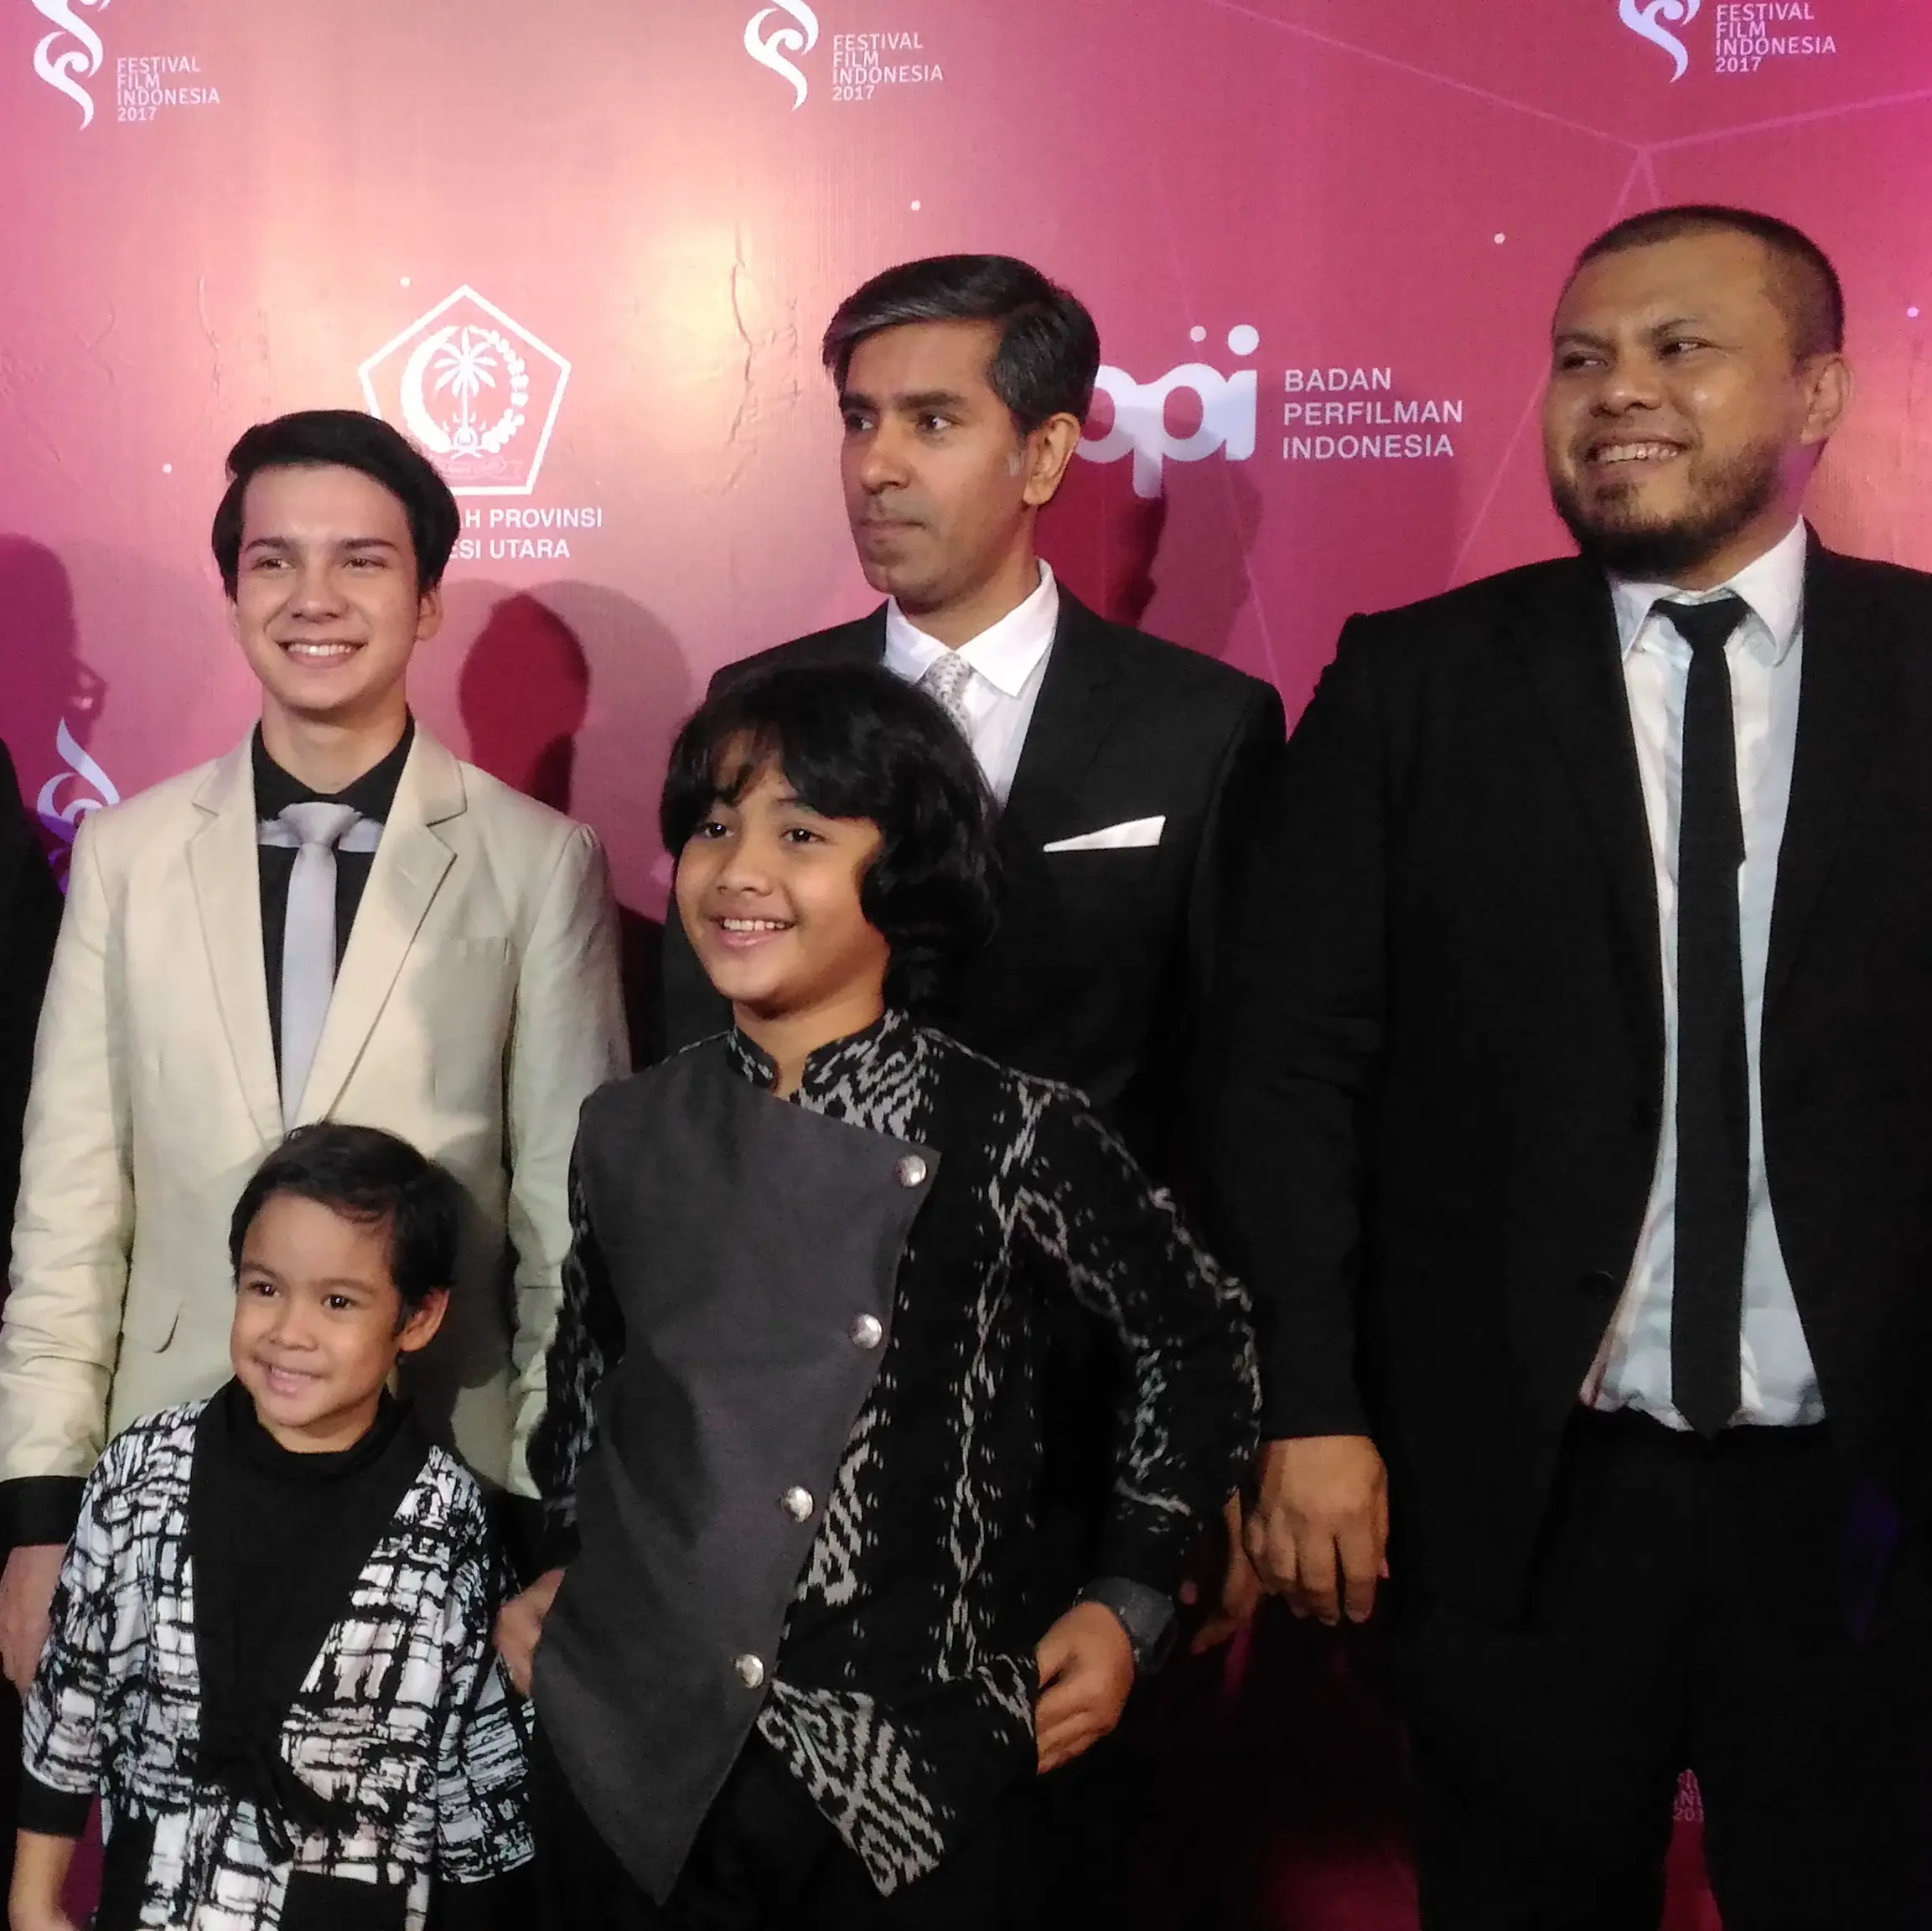 Para pemain dan sutradara film Pengabdi Setan di Red Carpet ajang Festival Film Indonesia 2017 yang berlangsung di Manado, Sulawesi Utara (Liputan6.com/Zulfa Ayu Sundari)